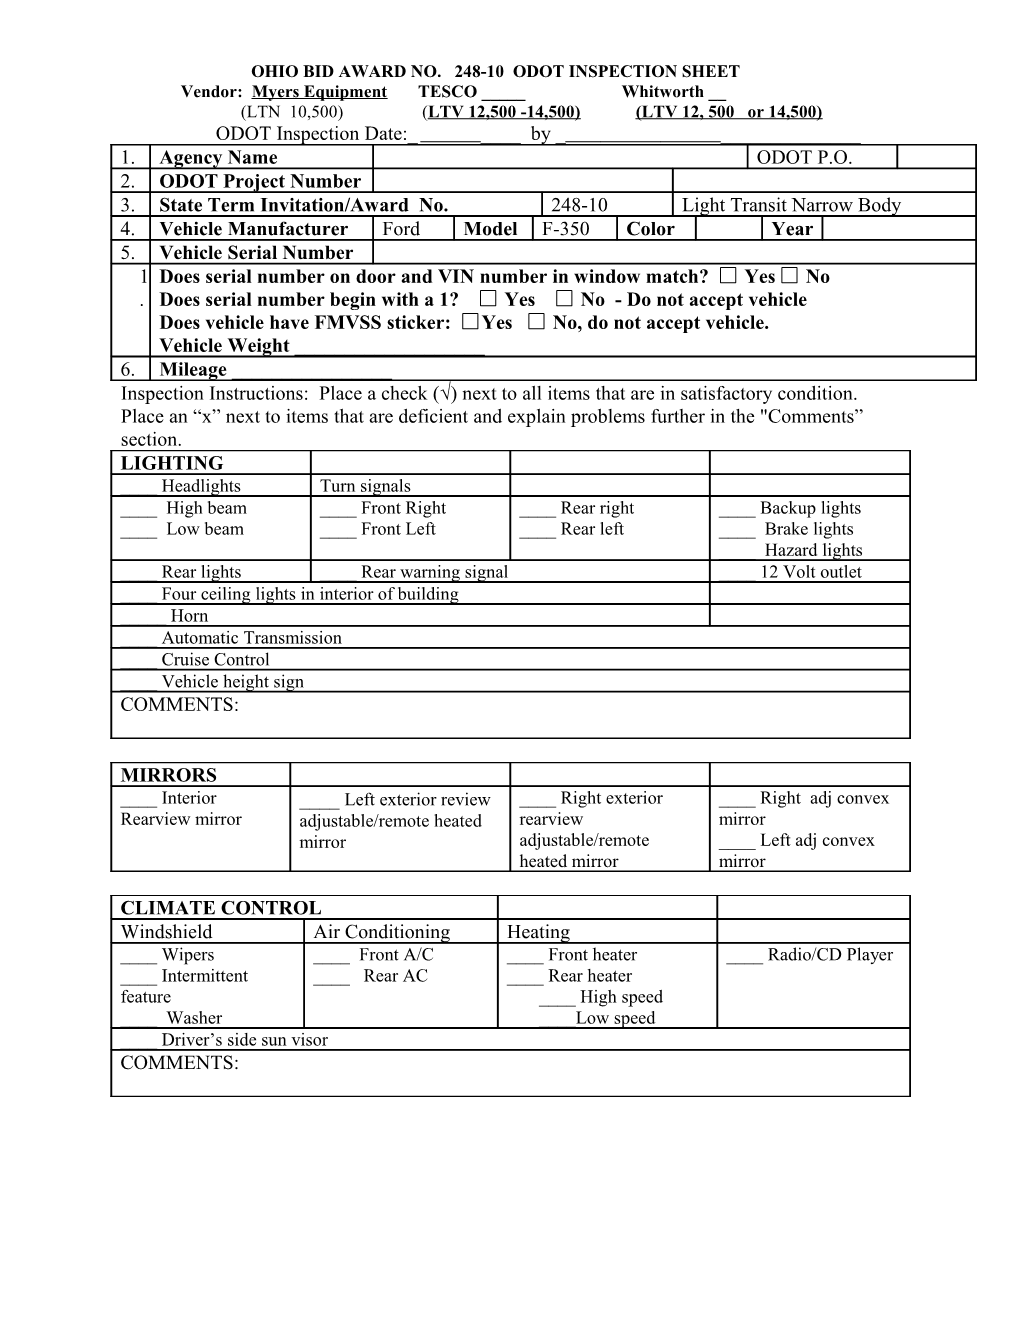 Ohio Bid Award No. 248-10 Odot Inspection Sheet